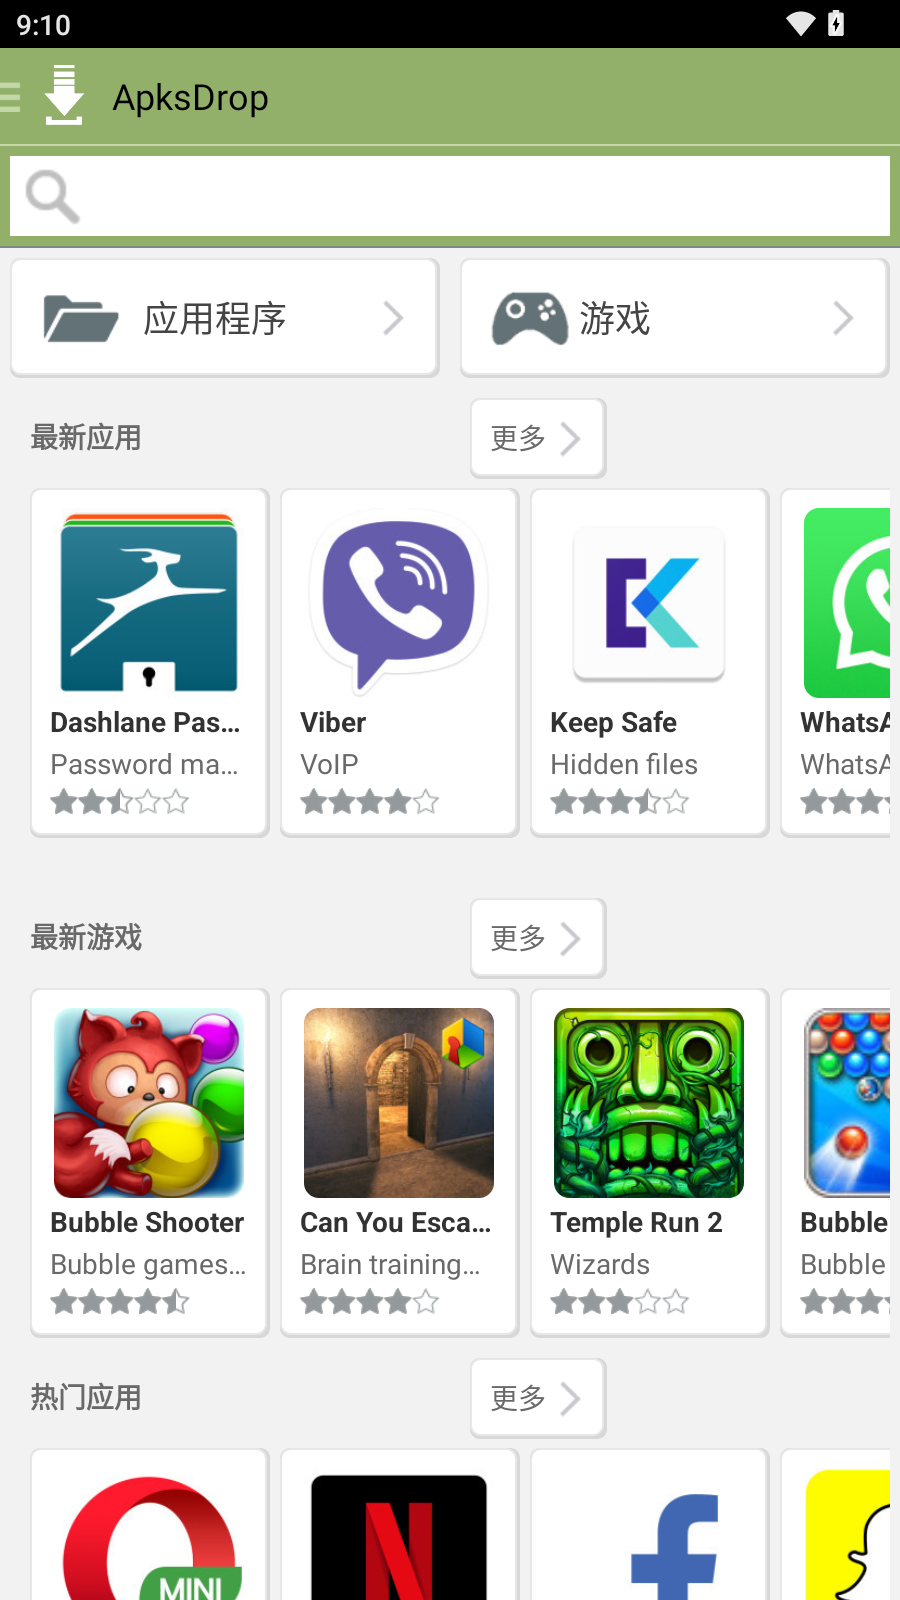 独家汉化 ApksDrop 1.4.4 国外应用商店 app 安卓版 汉化中文版